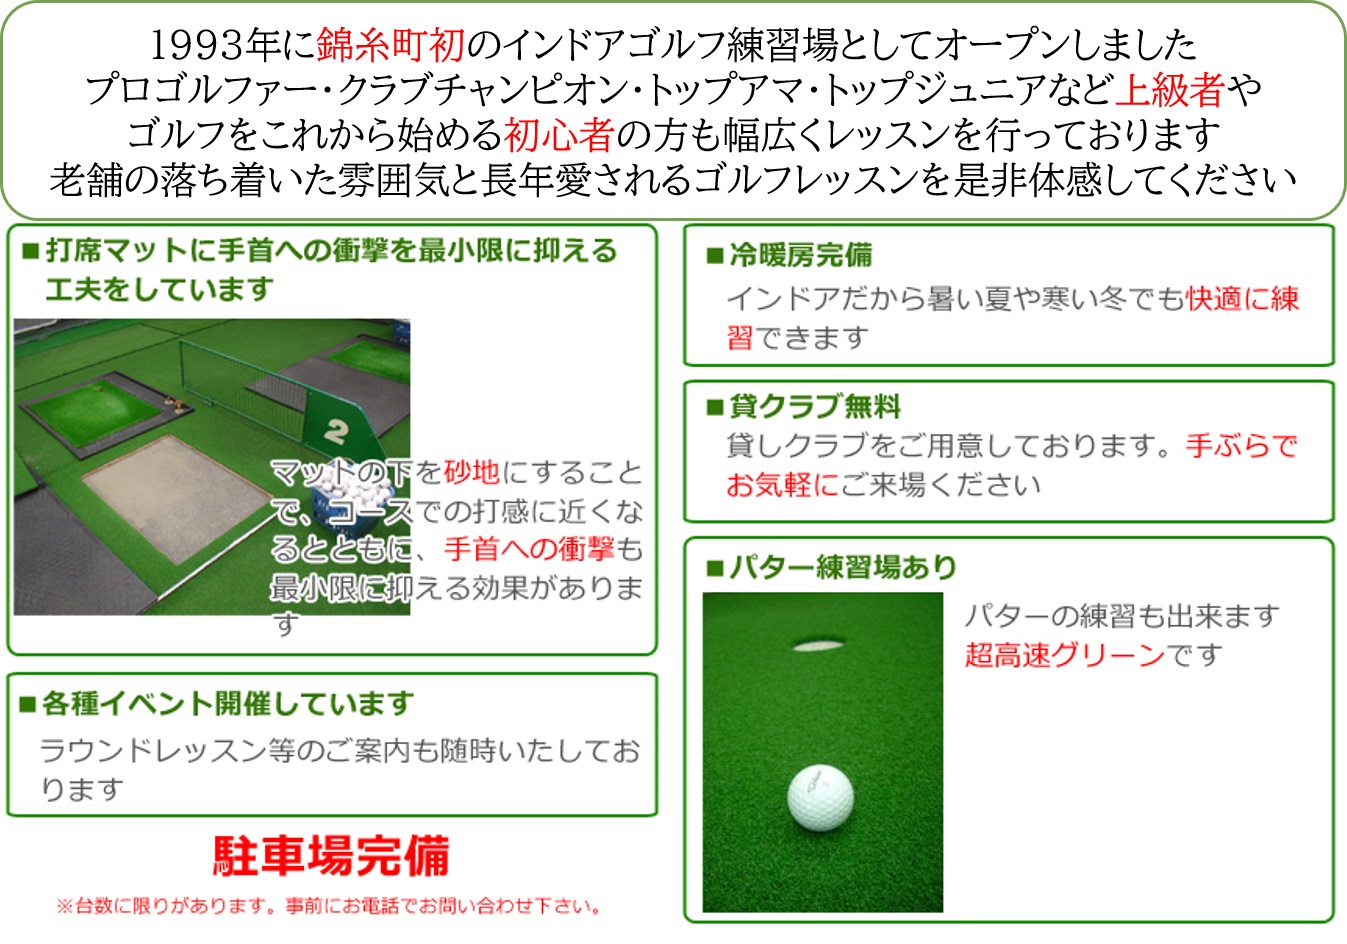 墨田区錦糸町サングッドゴルフ練習場の特徴